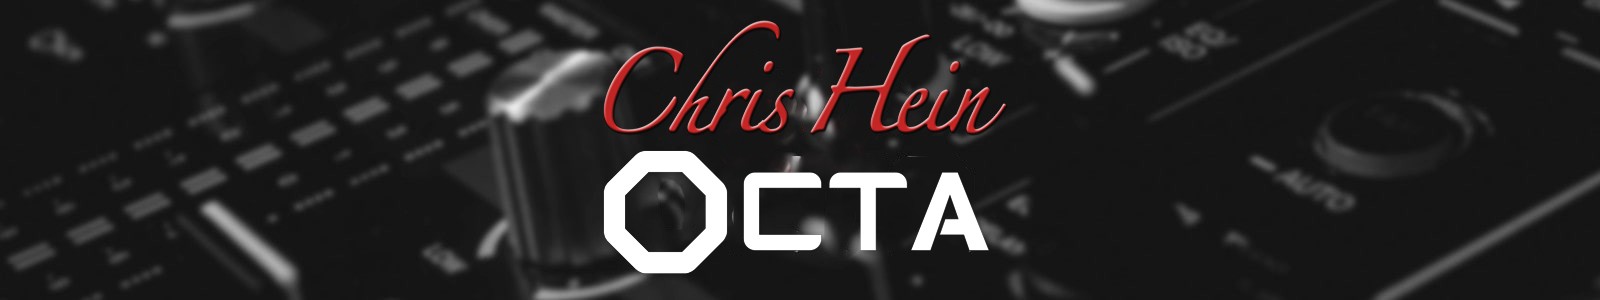 Best Service Chris Hein OCTA